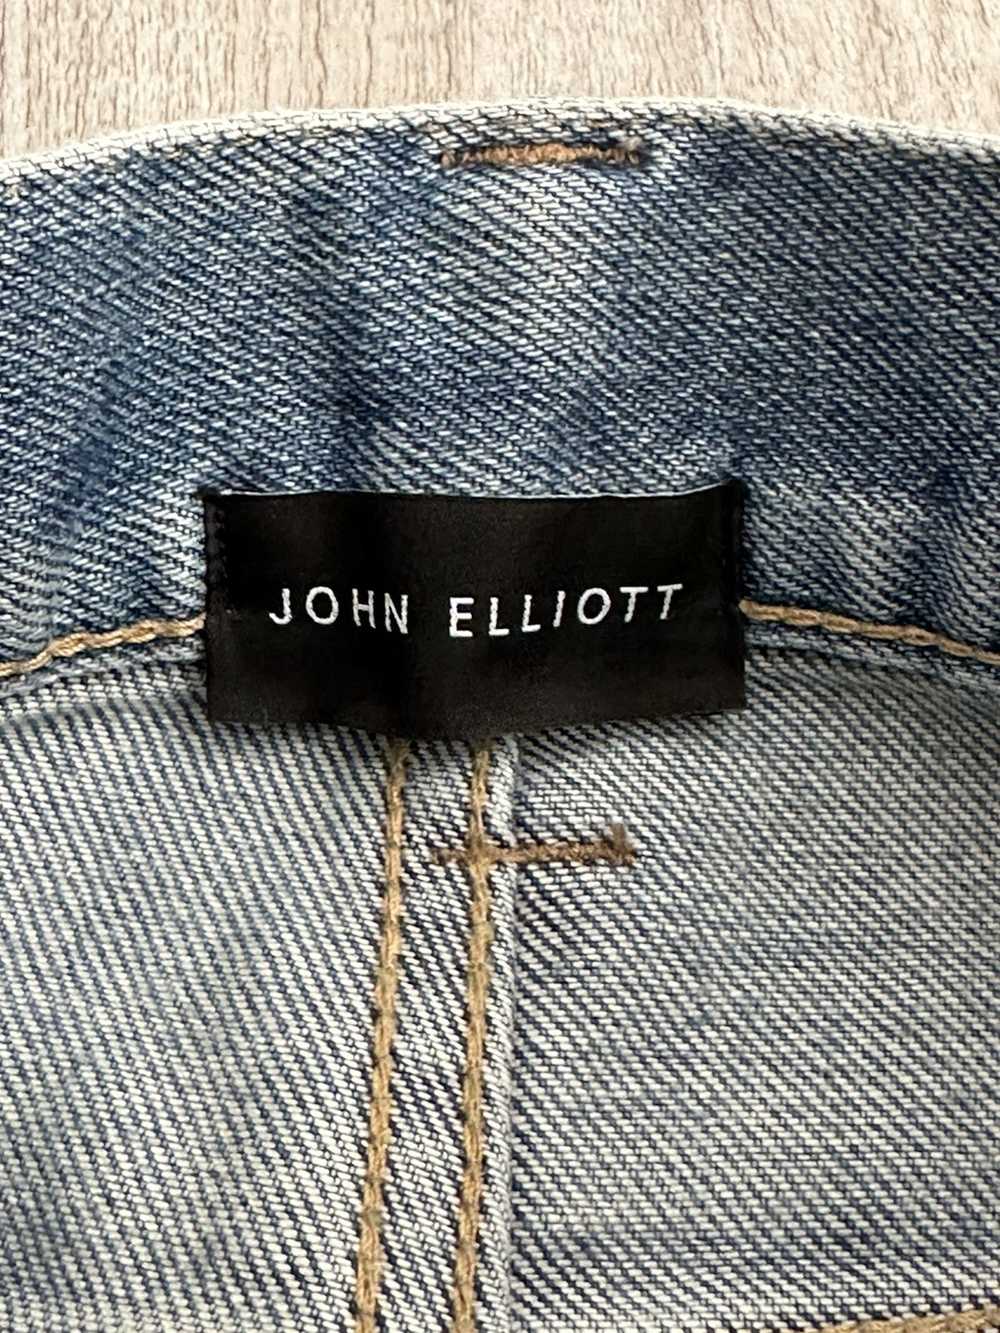 John Elliott John Elliot Cast 2 slim Fit Jeans 36 - image 7